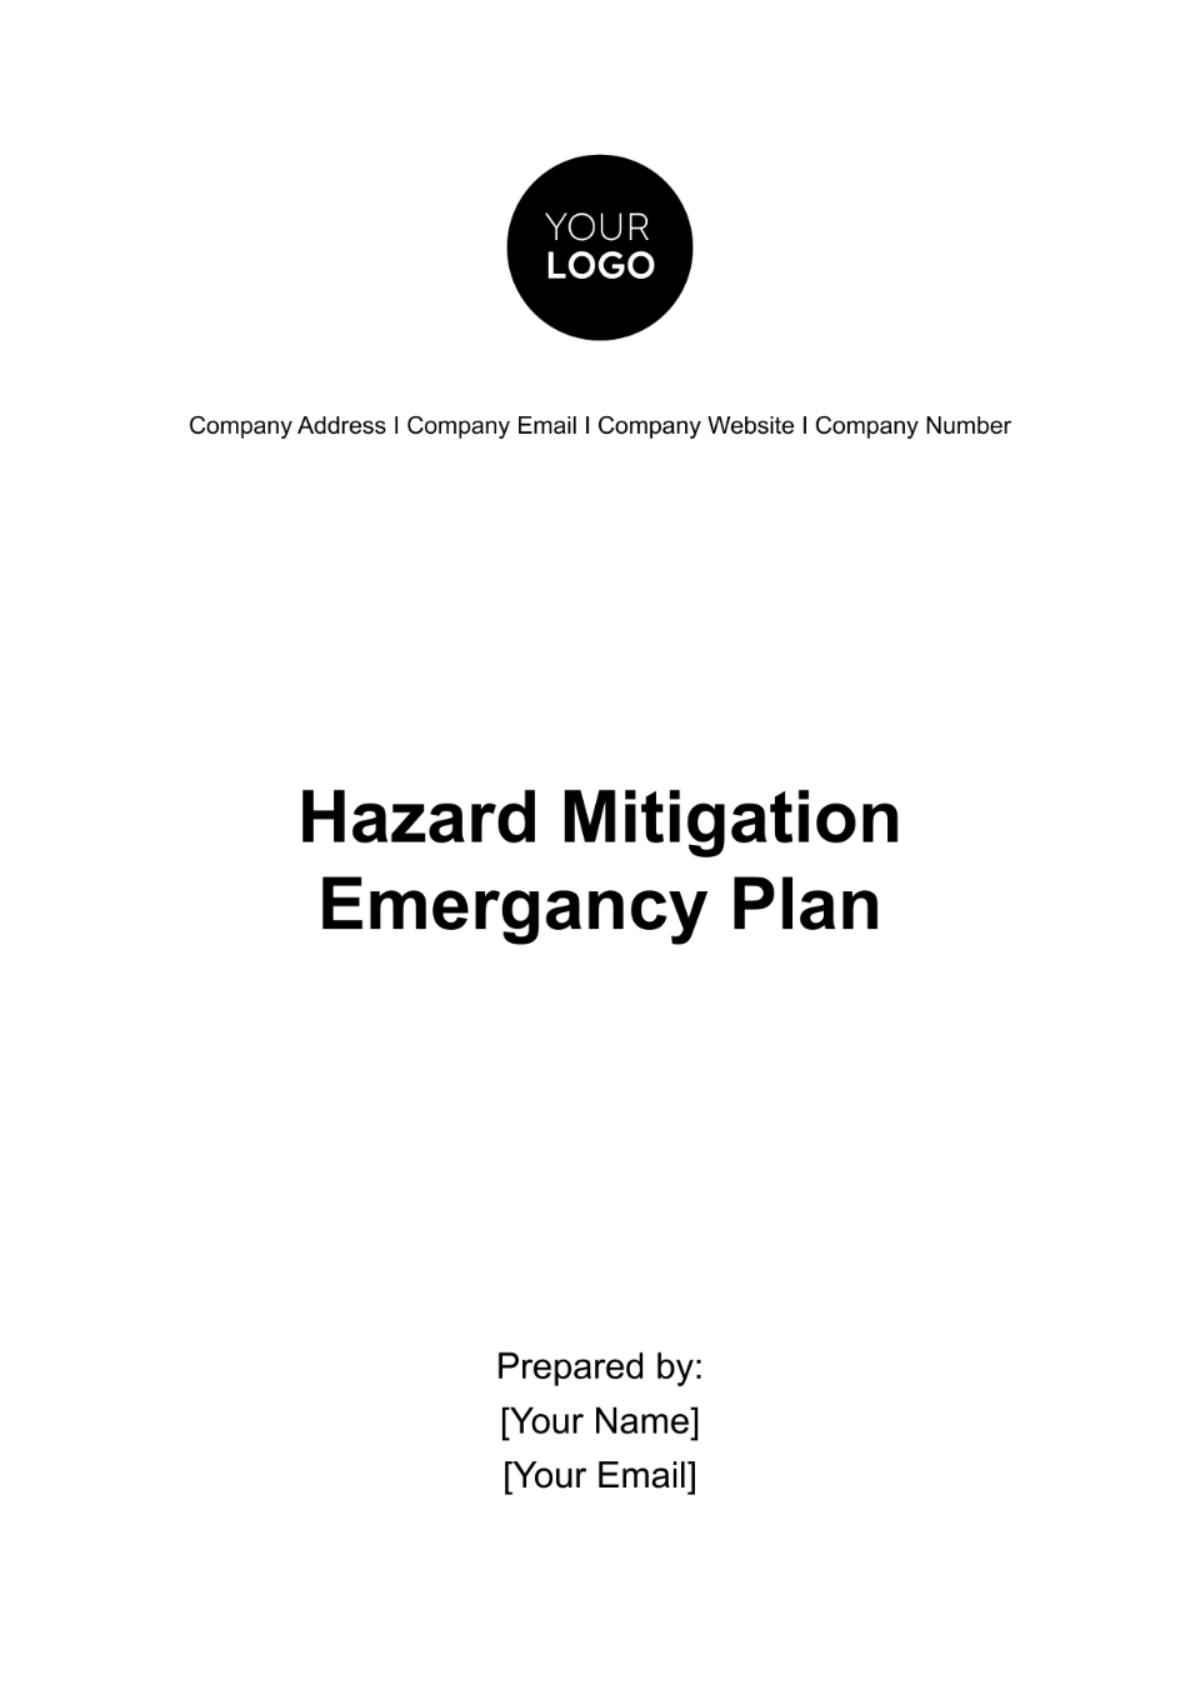 Hazard Mitigation Emergency Plan Template